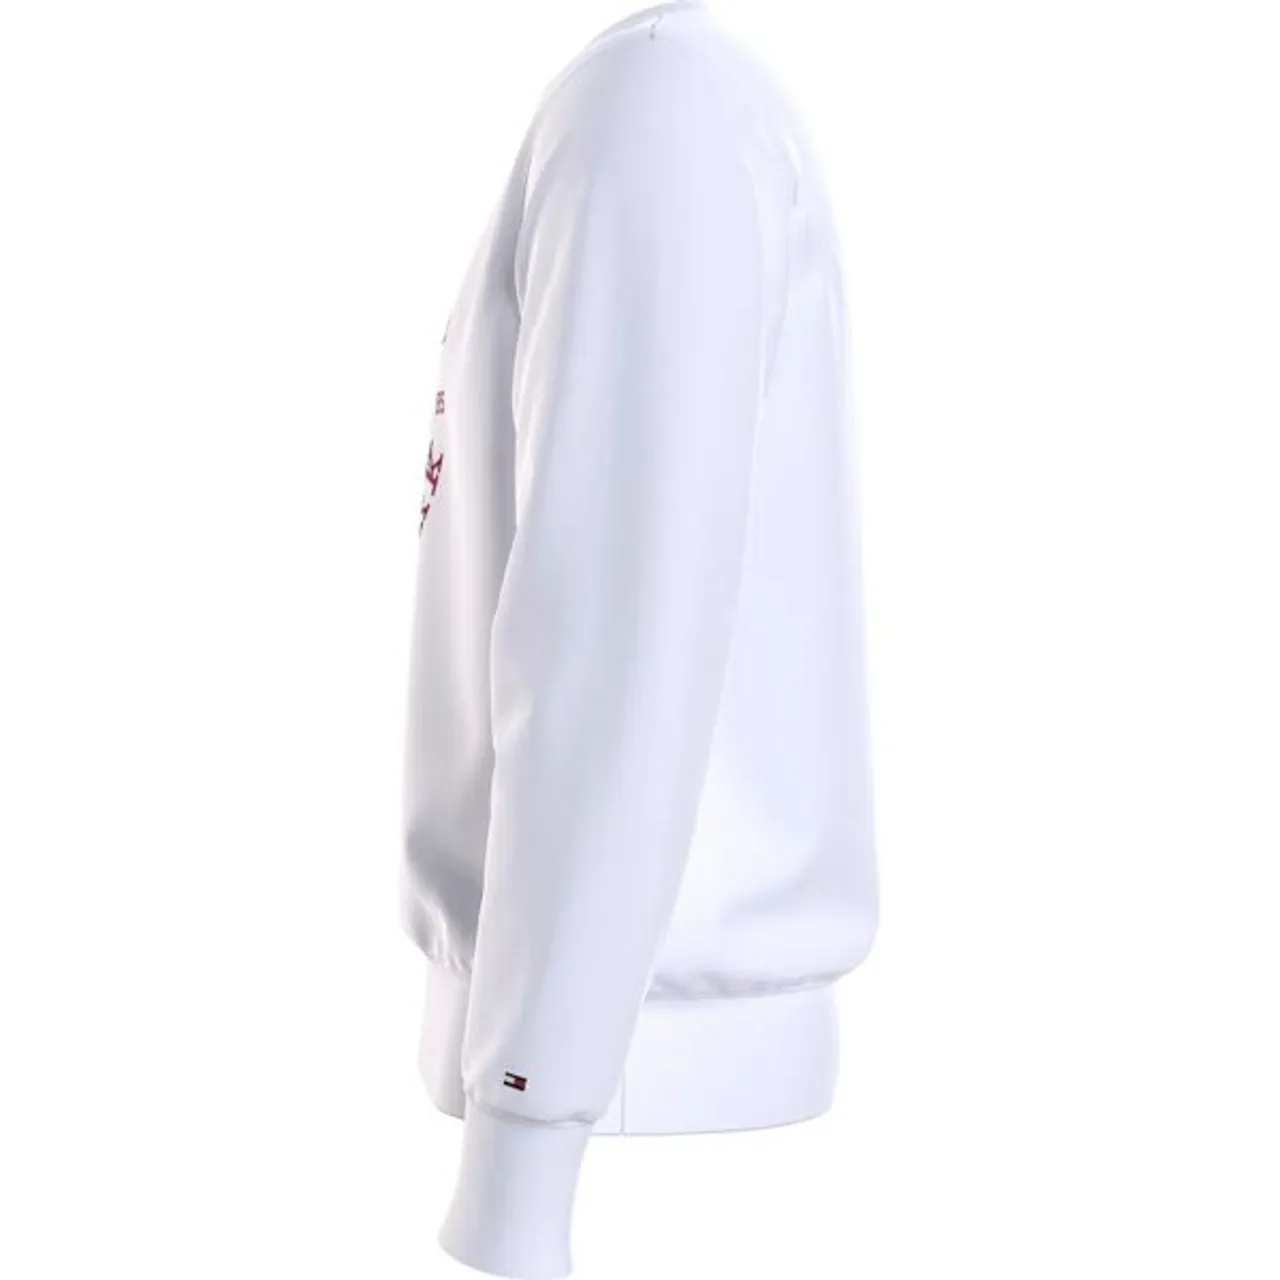 Sweatshirt TOMMY HILFIGER "BIG ICON CREST SWEATSHIRT" Gr. XXL, weiß (white) Herren Sweatshirts mit großem Logo auf der Brust